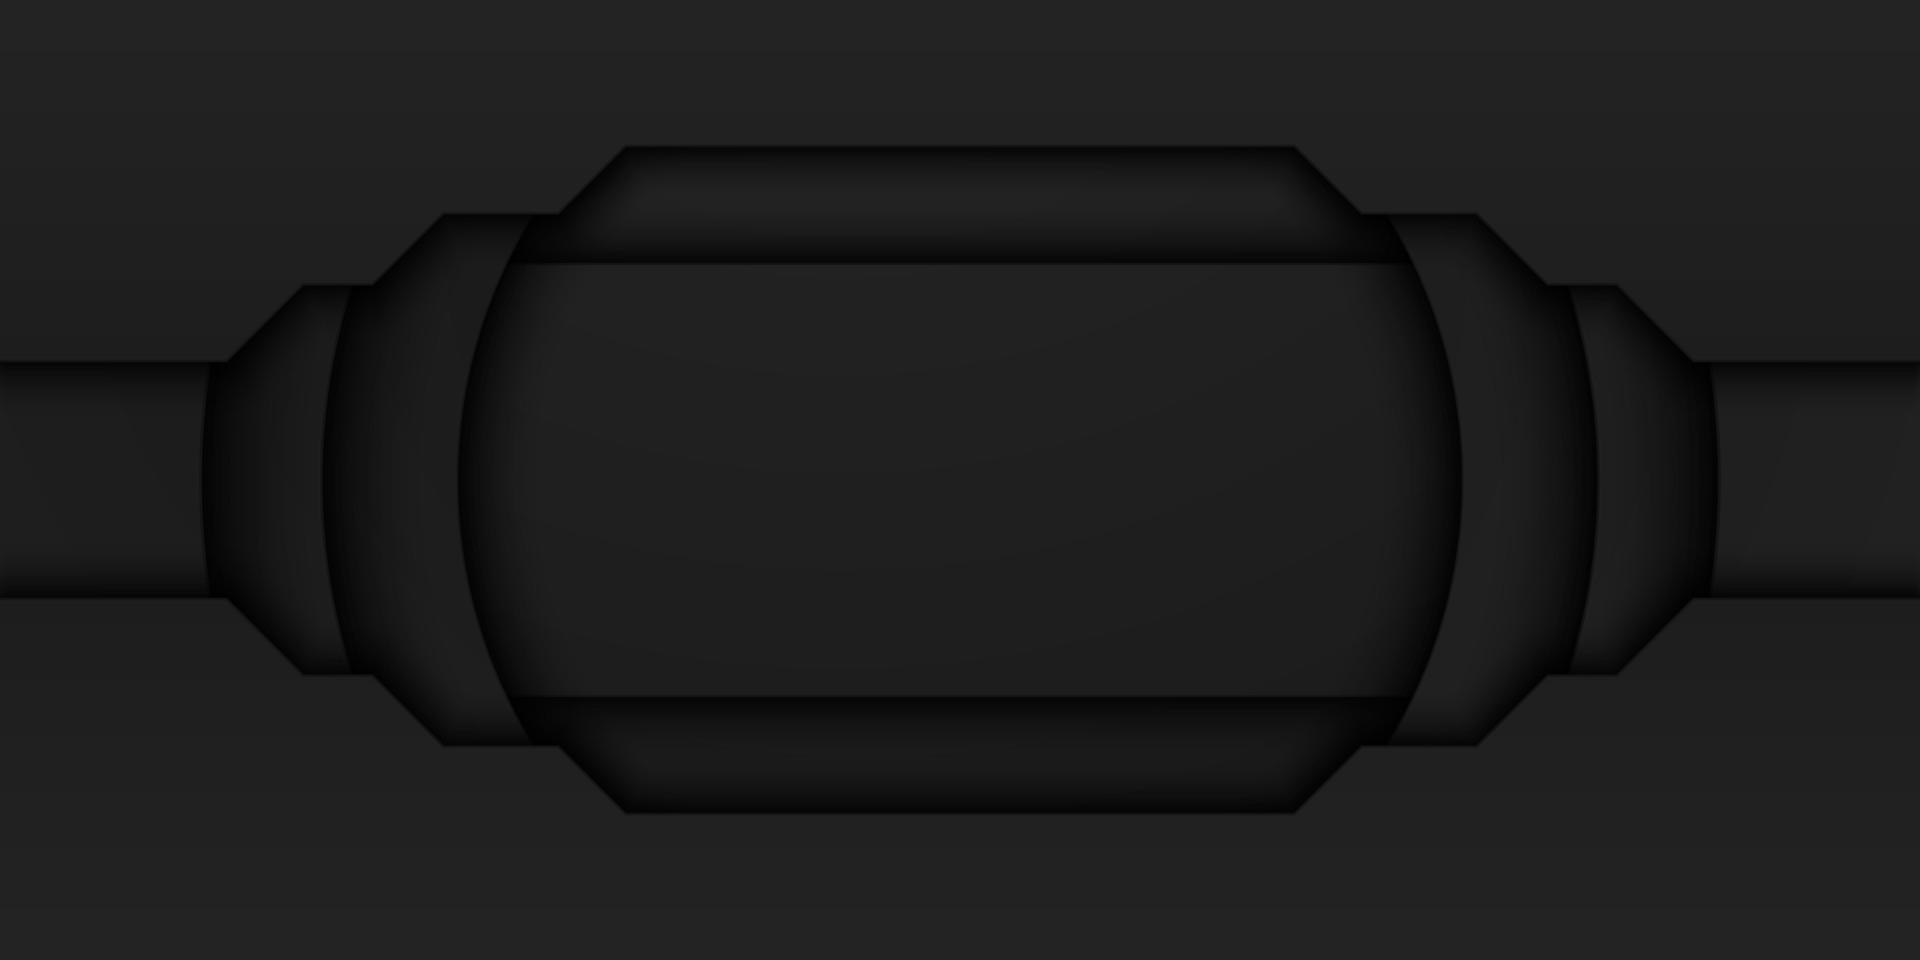 abstrakt svart ram bakgrund, cirkulärt överlappande lager med rektangel inuti, cirkelform, mörk minimal design med kopieringsutrymme, vektorillustration vektor